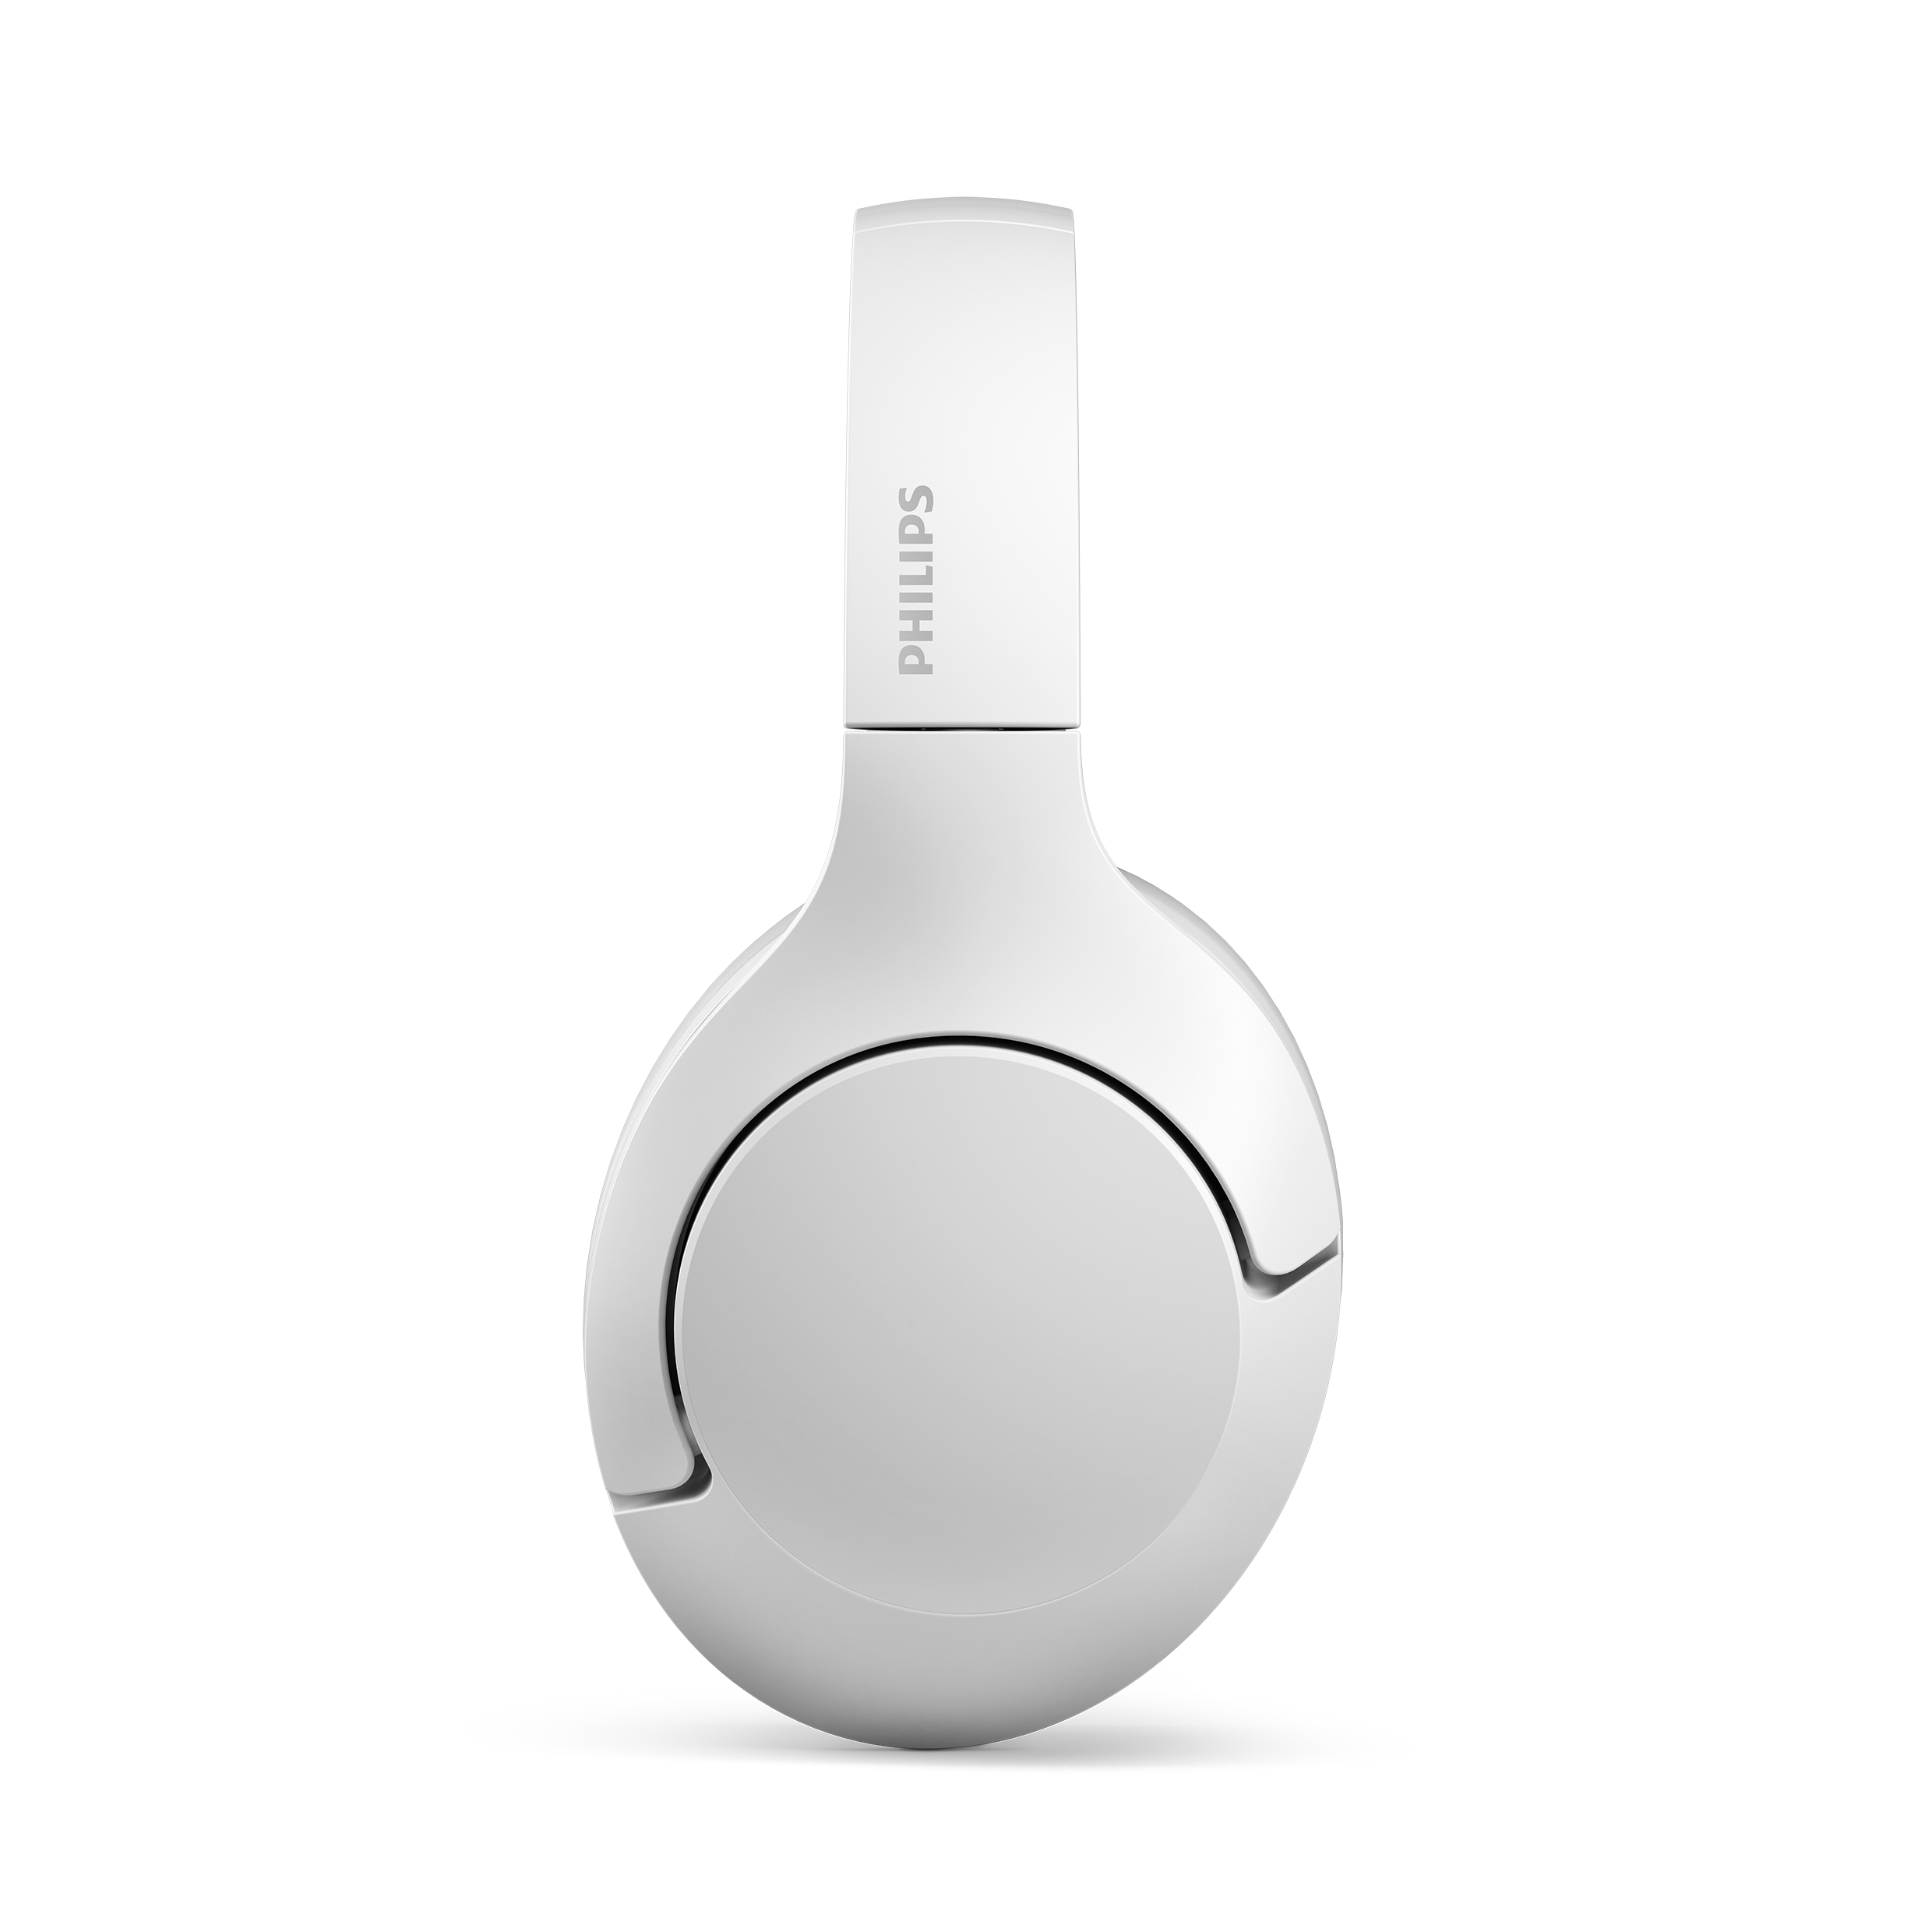 Over-ear TAH8506WT/00, Bluetooth PHILIPS Kopfhörer White